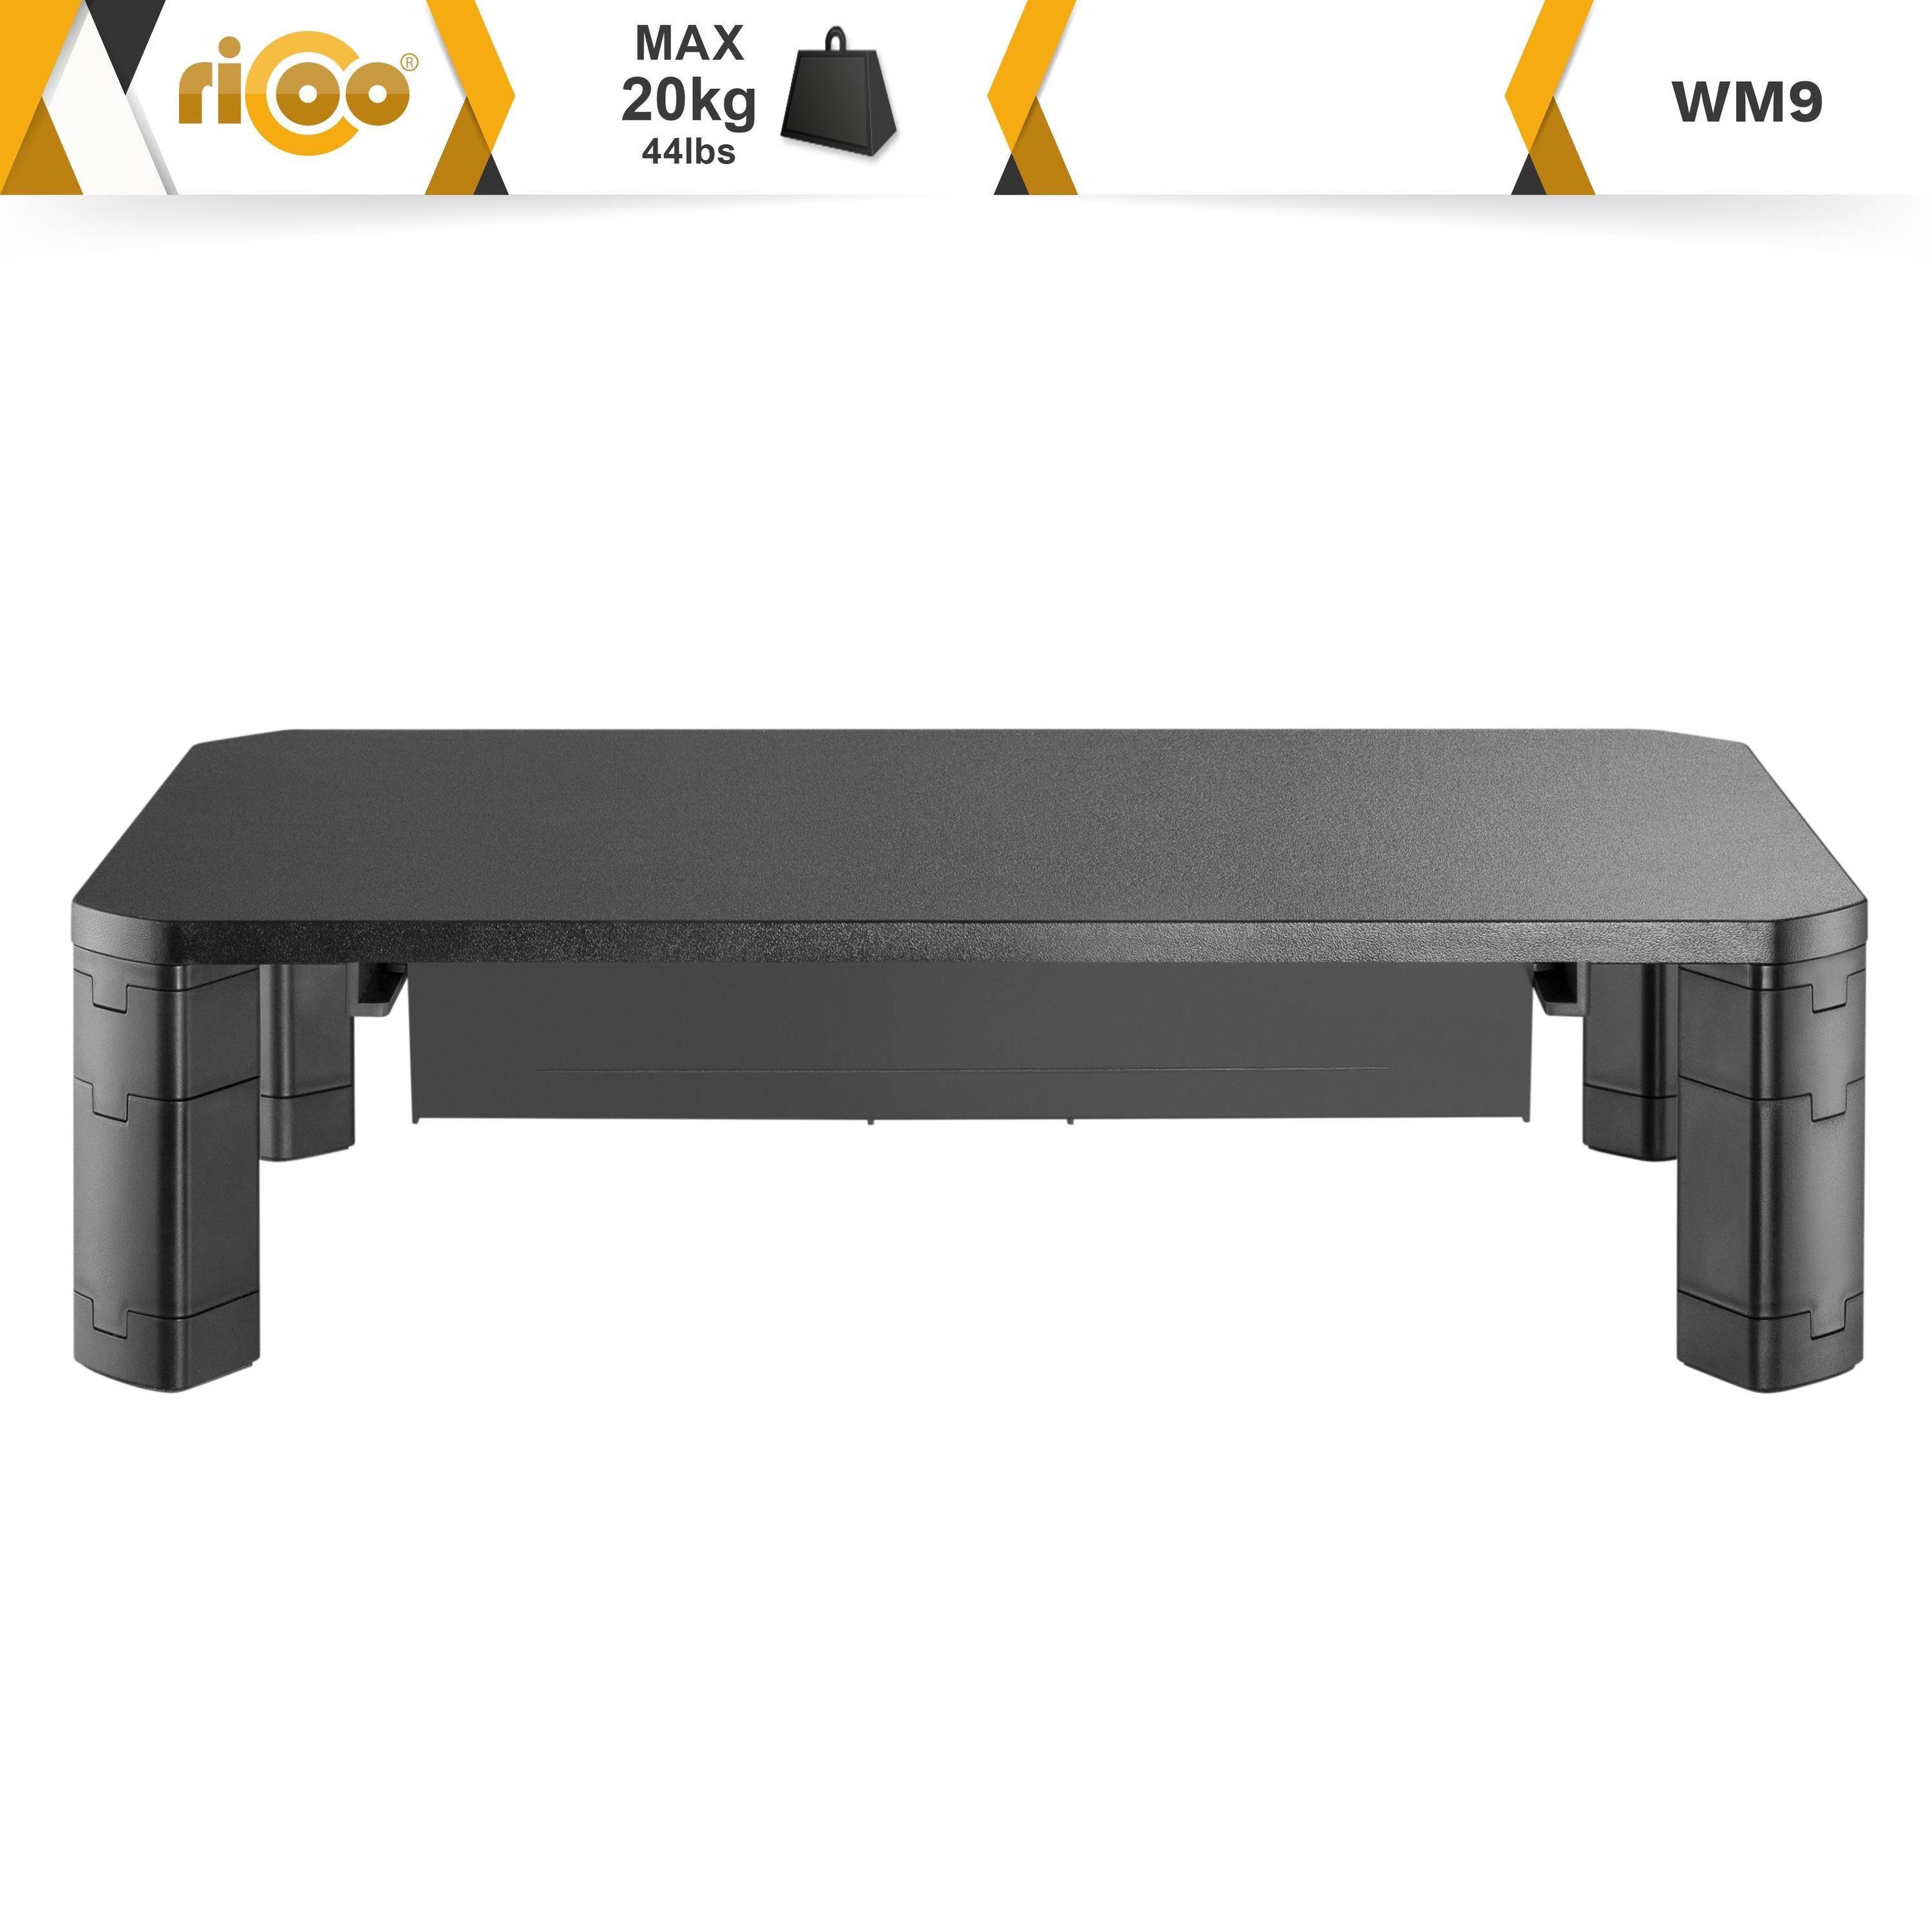 Bildschirm RICOO Schreibtischaufsatz Aufsatz Monitorerhöhung Stauraum mit WM9, Monitorständer Tisch